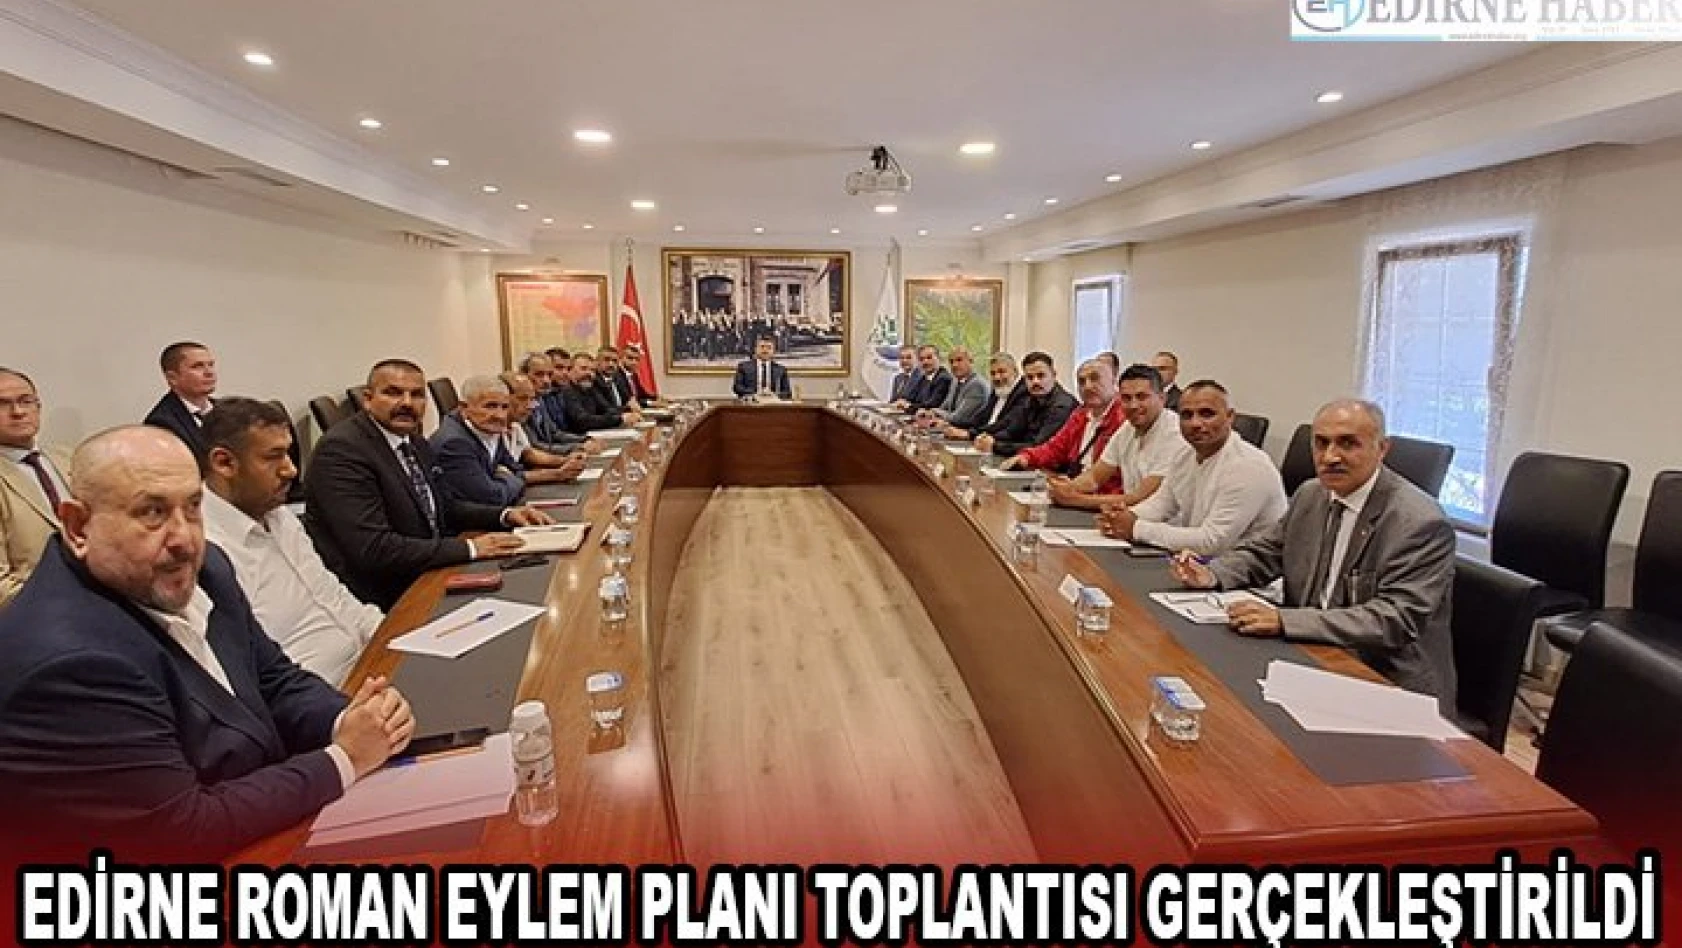 Edirne Roman Eylem Planı toplantısı gerçekleştirildi